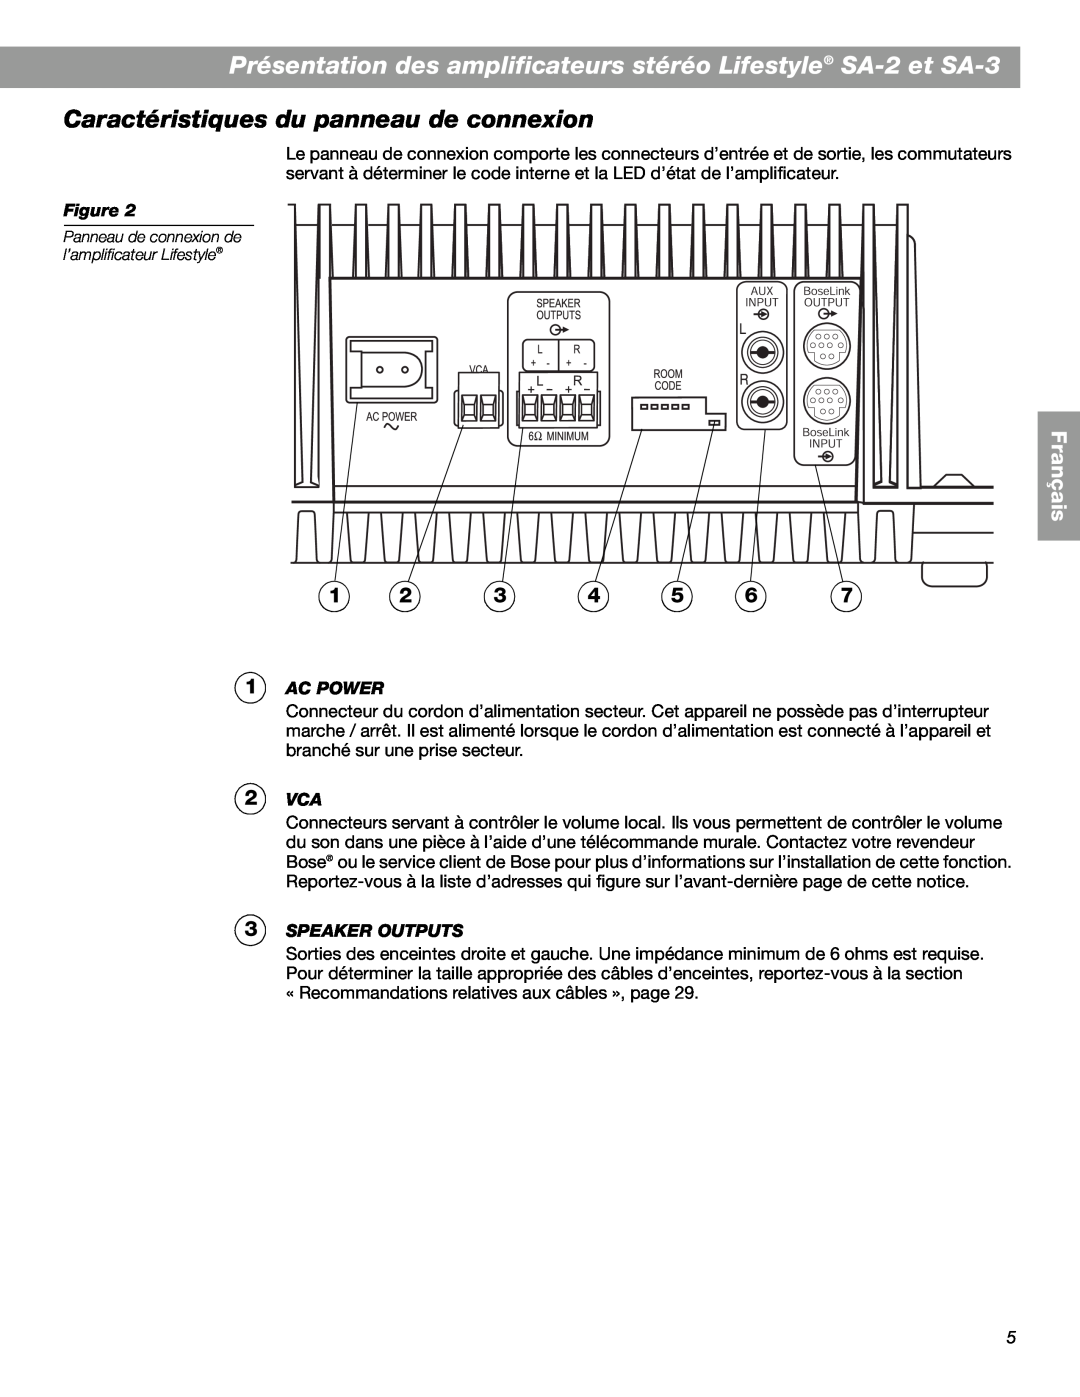 Bose SA-3, SA-2 manual Caractéristiques du panneau de connexion, Ac Power, Speaker Outputs, Français 